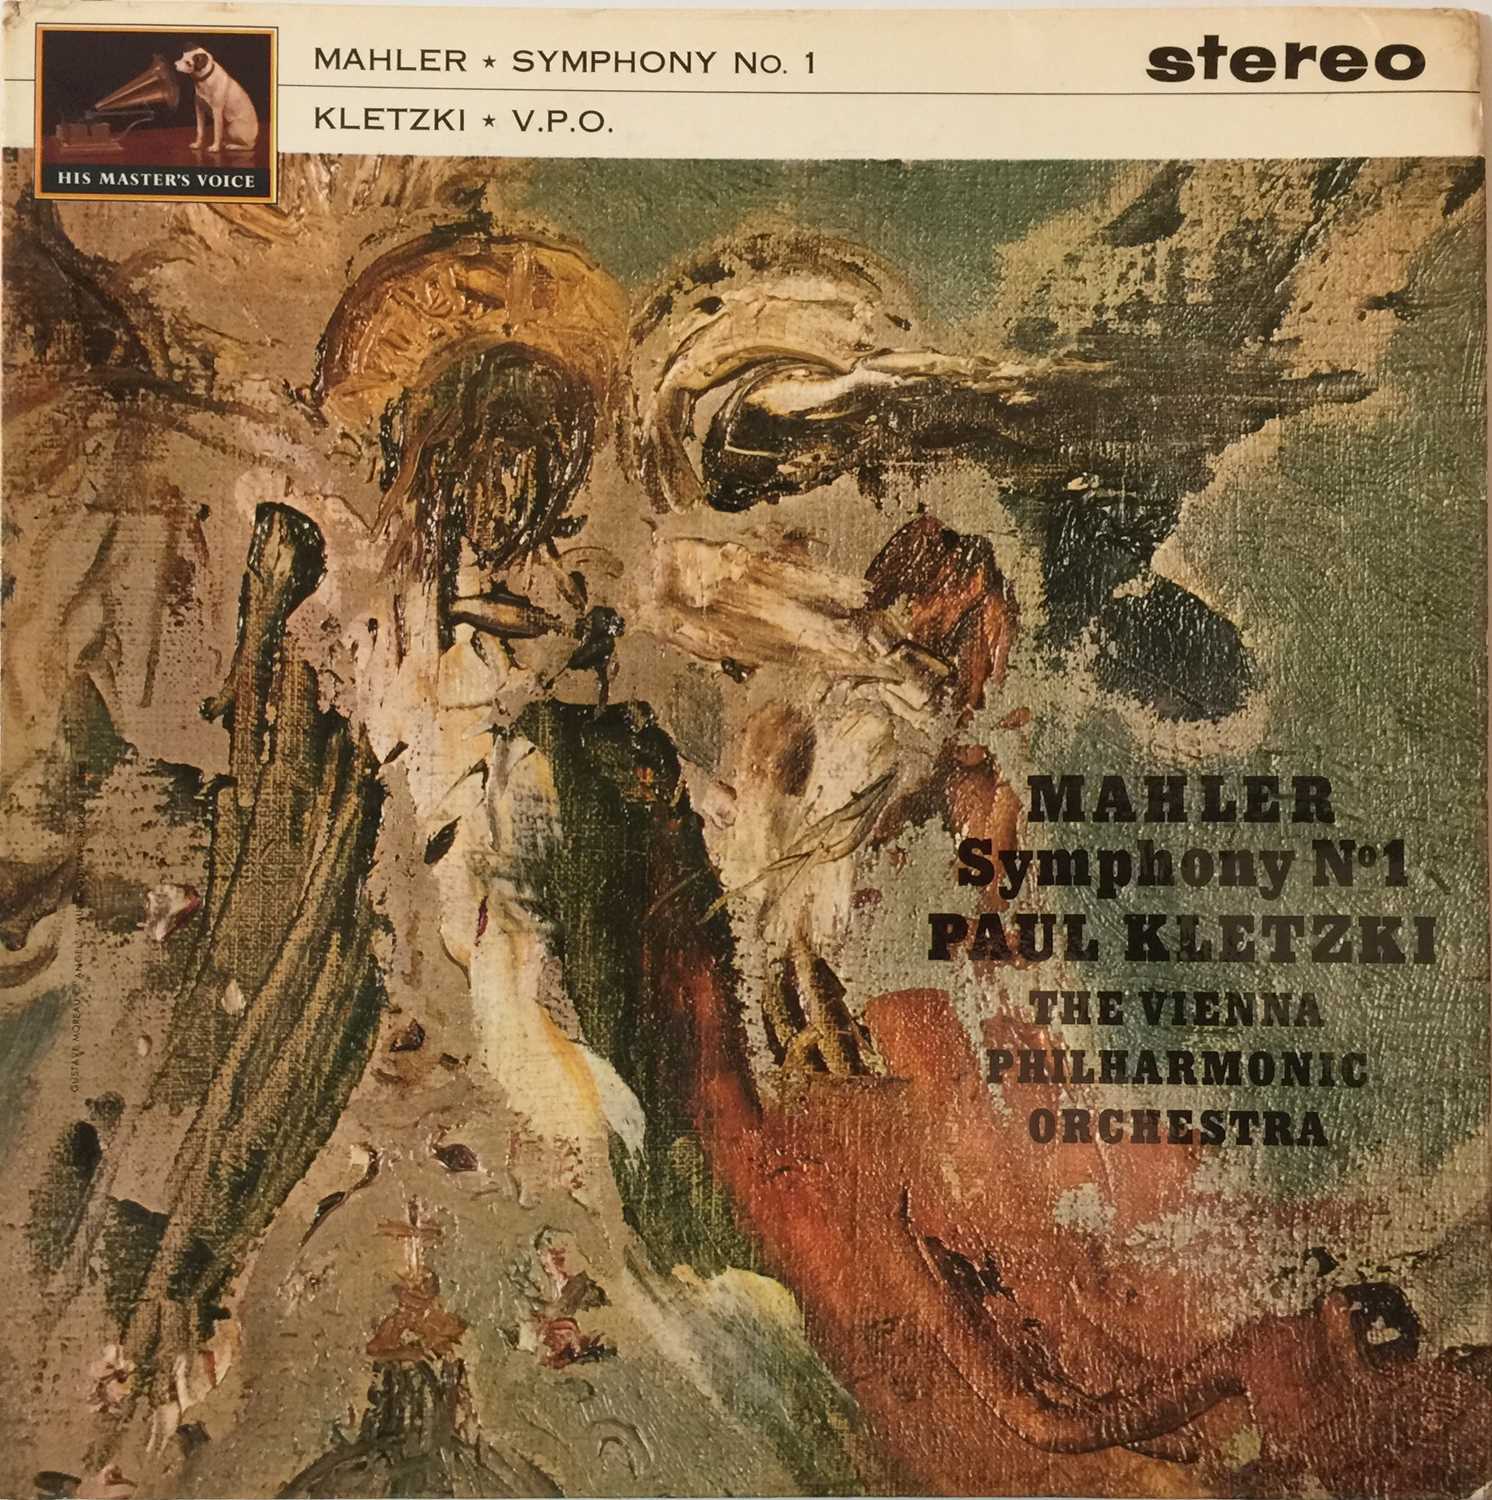 Lot 623 - Paul Kletzki - Mahler Symphony No. 1 LP (Original UK HMV Stereo Recording - ASD 483)